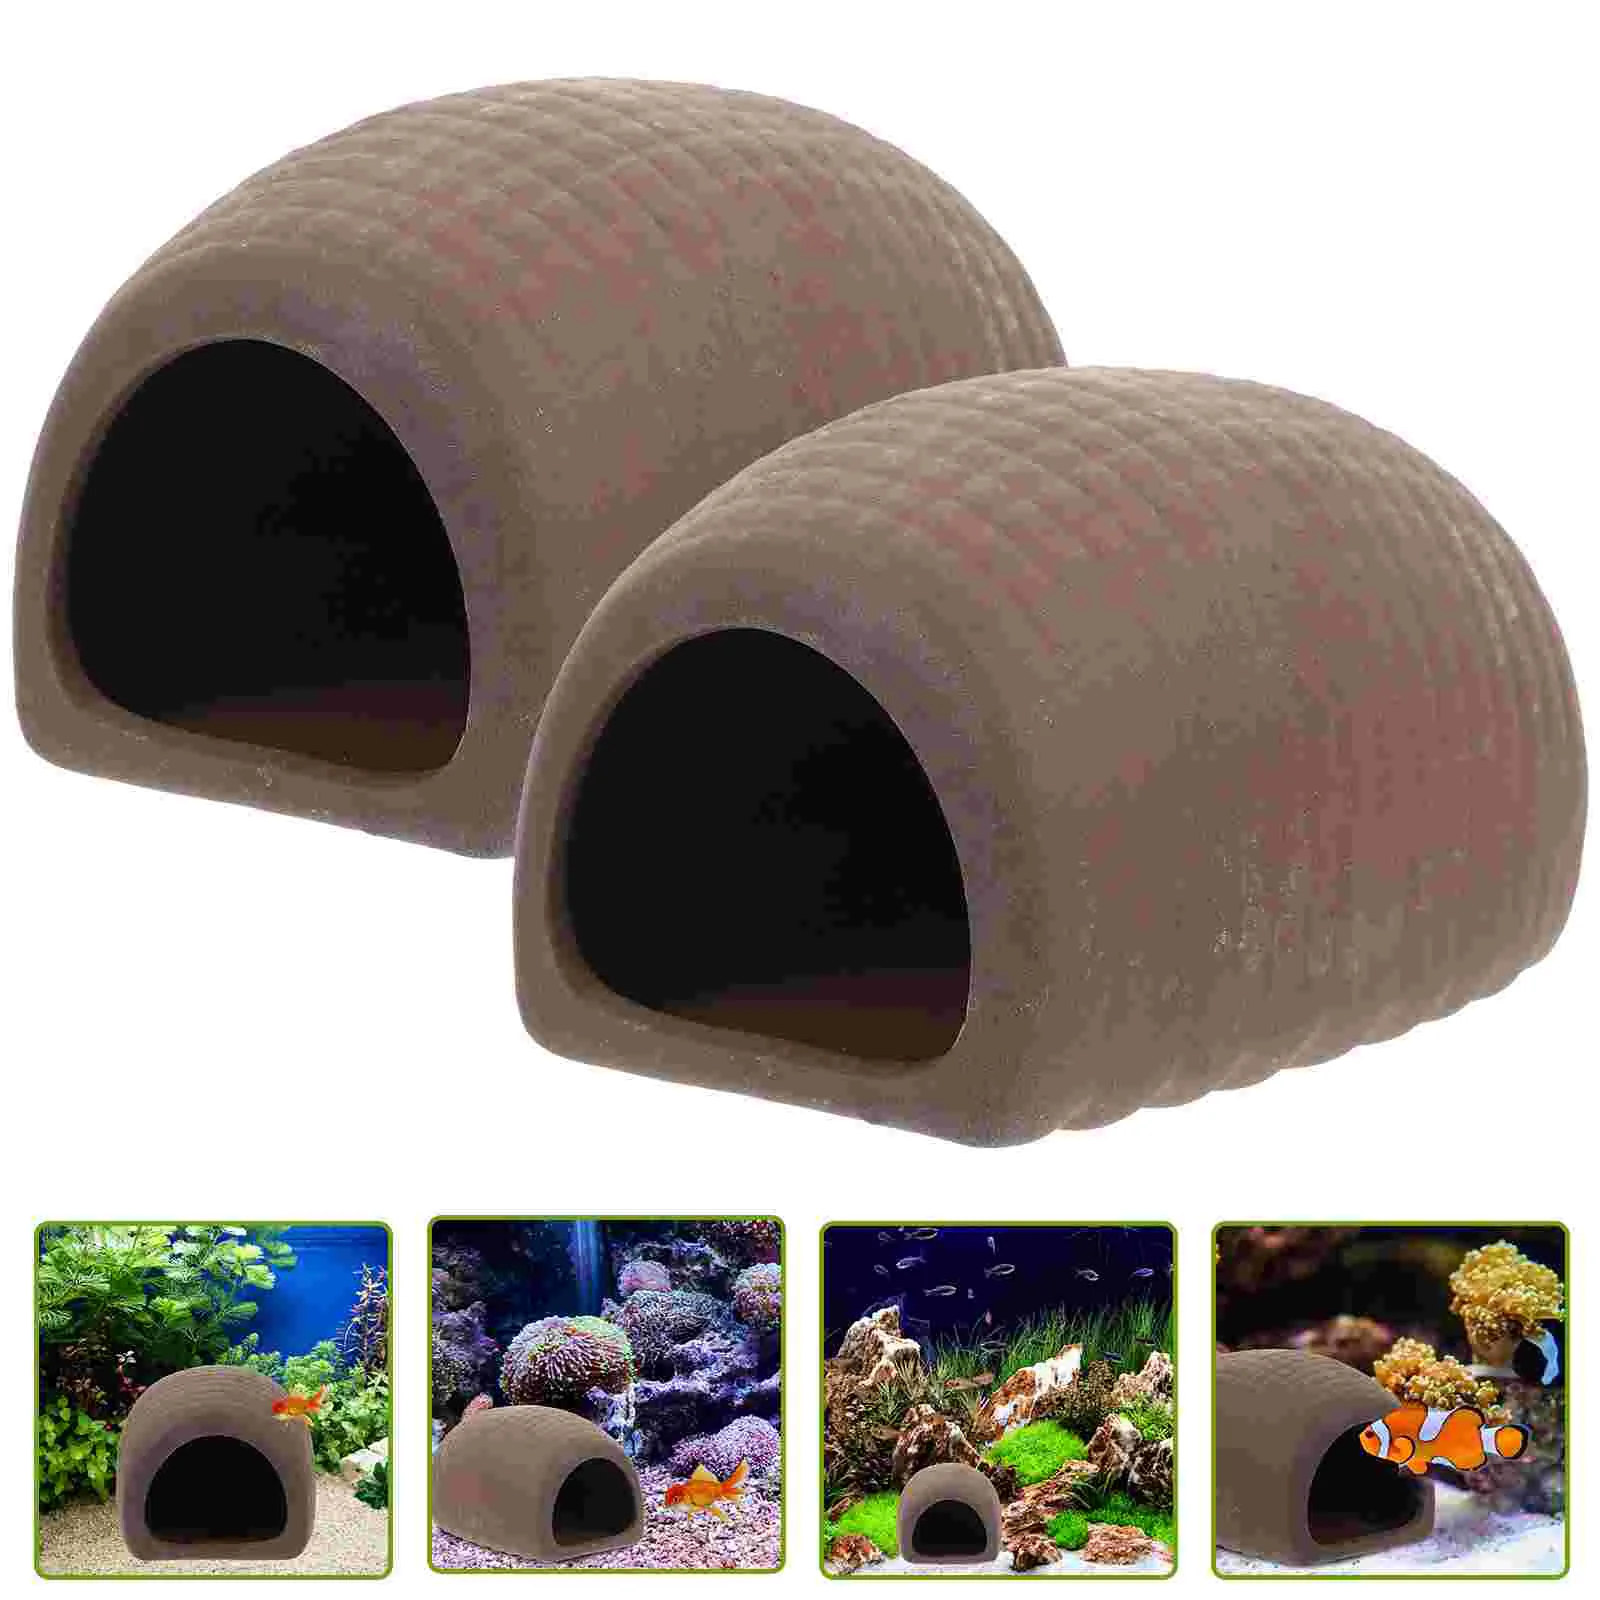 

Cave Aquarium Ceramic Tank Hideout Hideaway Shrimp Hiding Reptile Shelter Breeding House Decor Hide Decorations Landscape